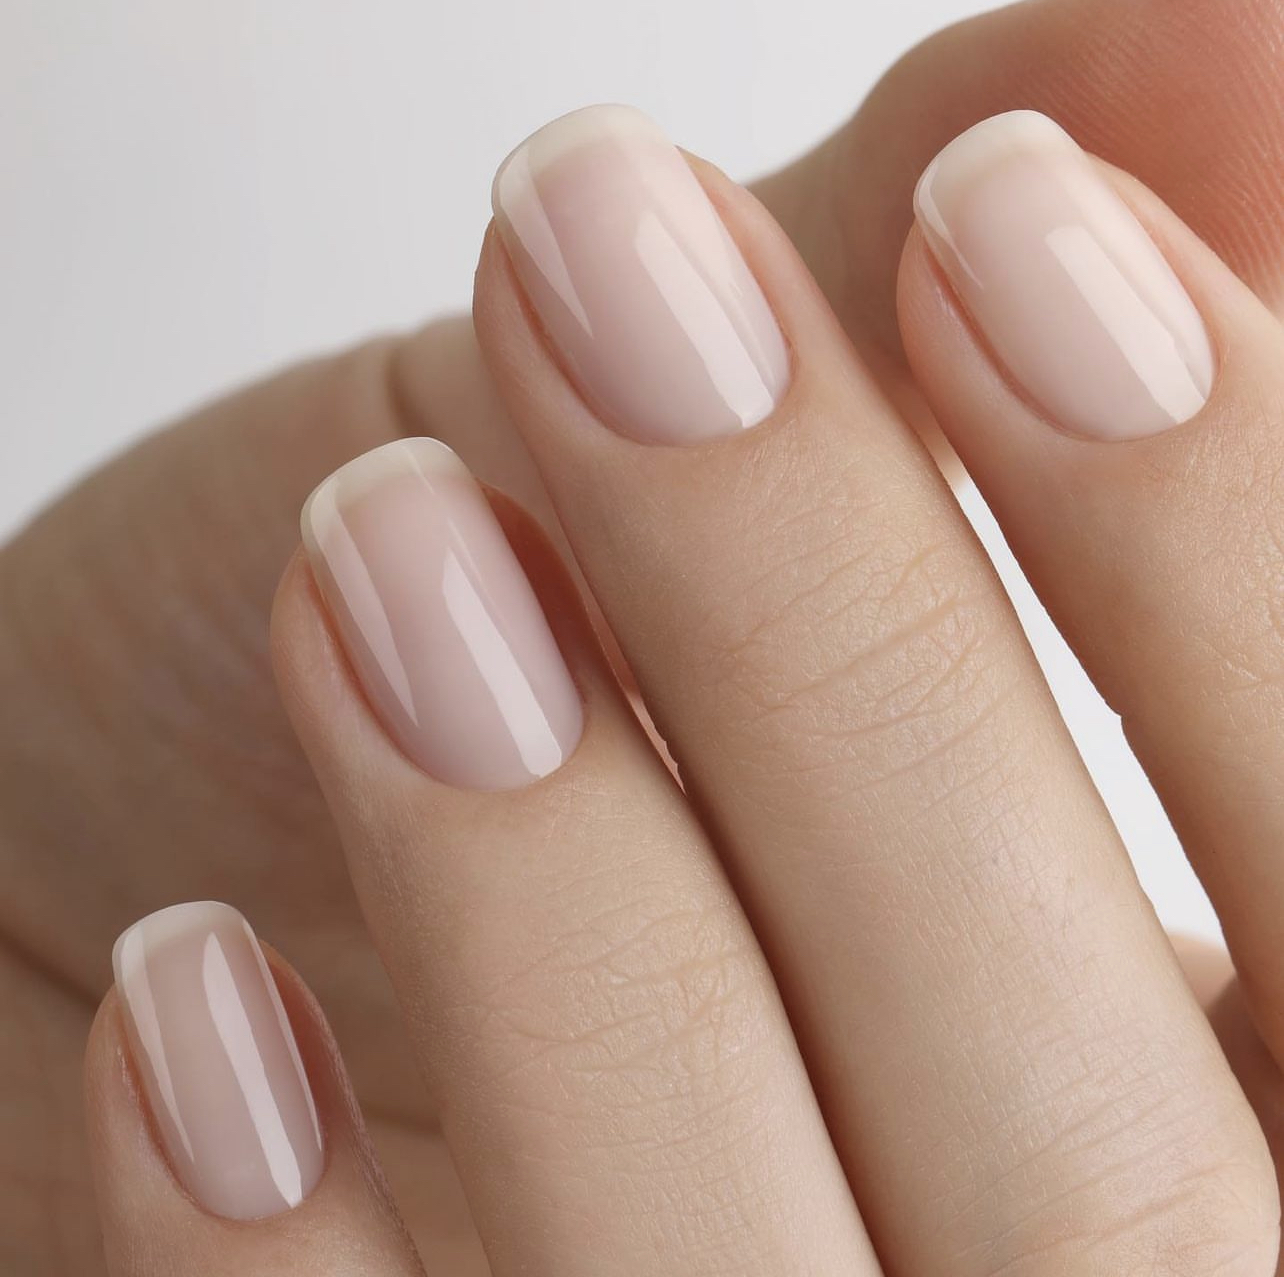 𝔾𝕝𝕠𝕨 ℕ𝕒𝕚𝕝𝕤 en Instagram Uñas forradas uñas naturales nailsart  Glow nails calidad uñas perfectas uñas acrílicas  Nails Beauty